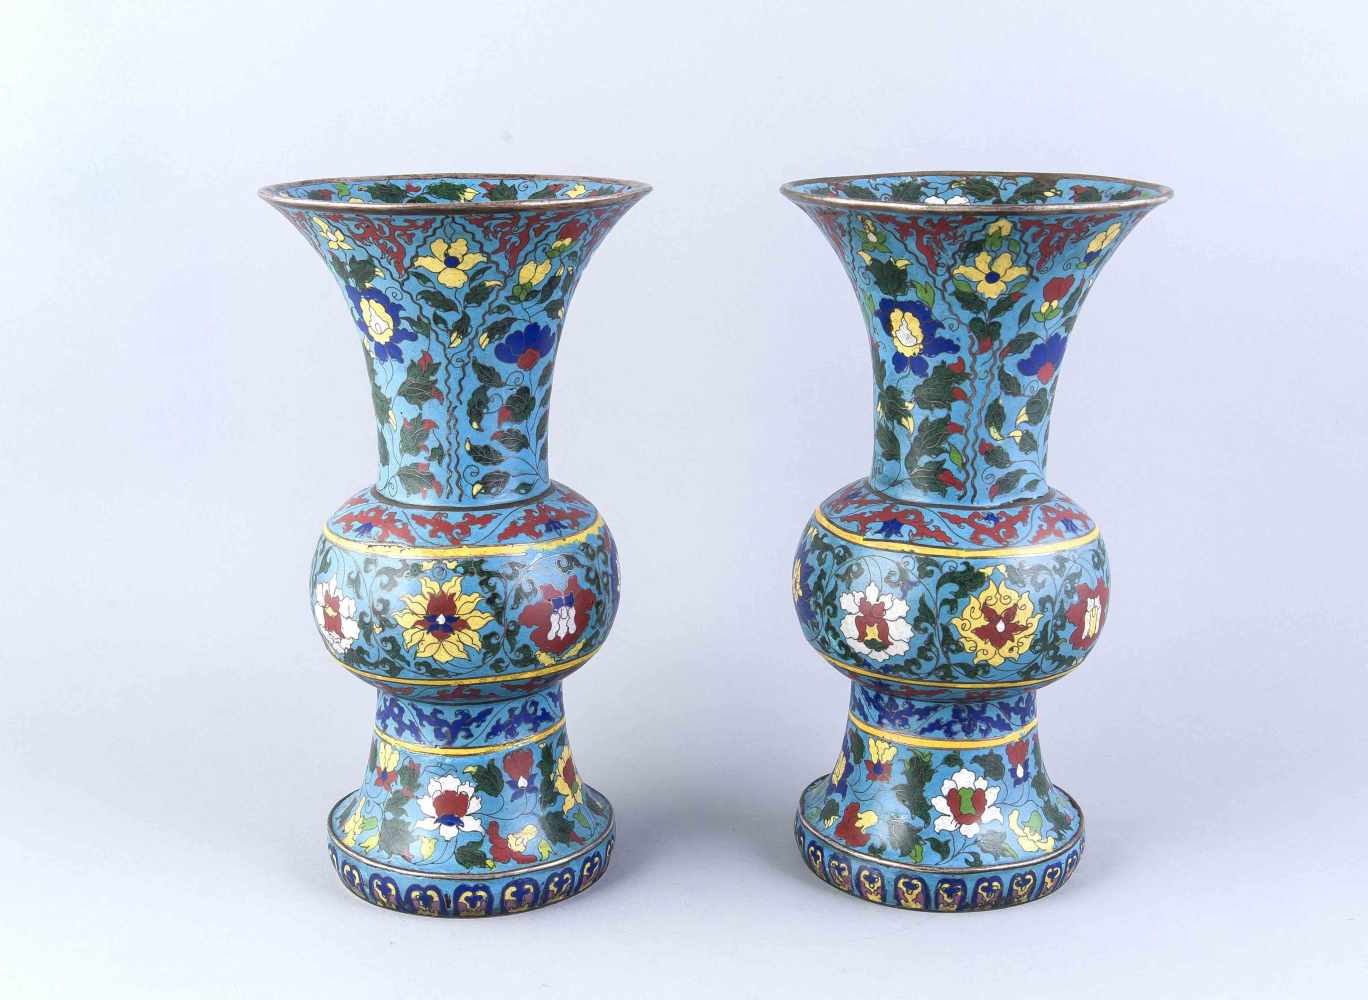 Paar GU-Vasen, China, frühes 20. Jh., Kupferkorpus, versilbert, bauchiger Korpus, trompetenförmig